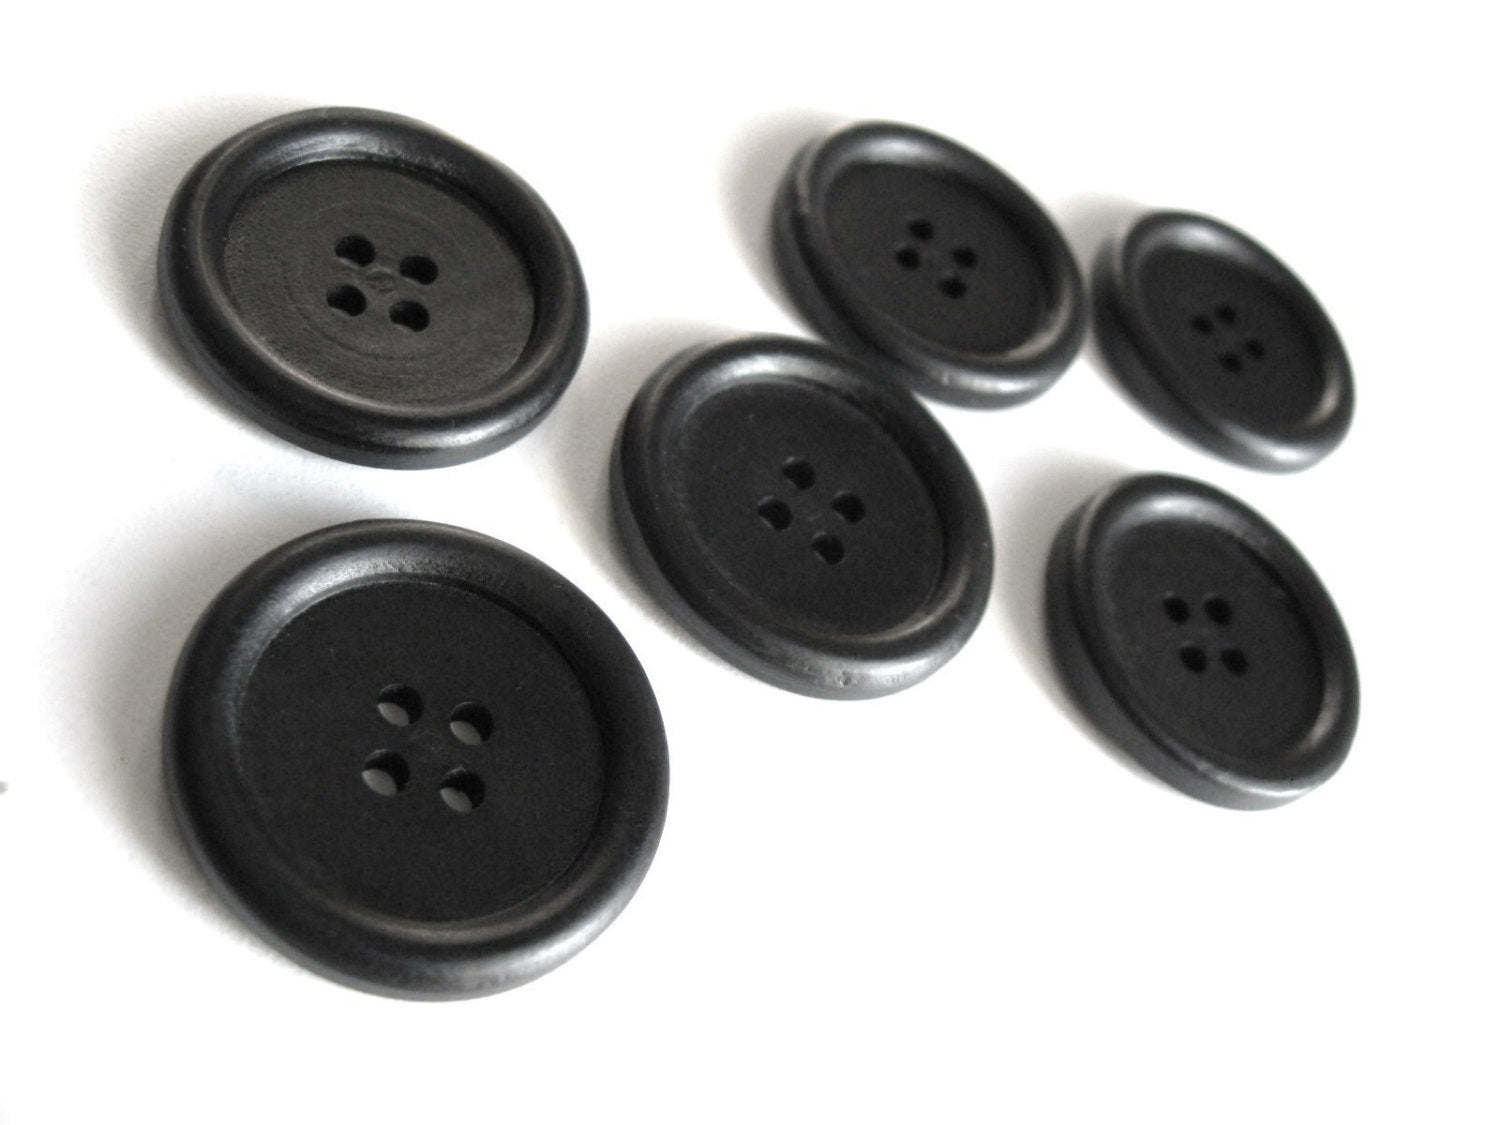 Bouton de bois noir de 3cm - ensemble de 6 boutons en bois teint